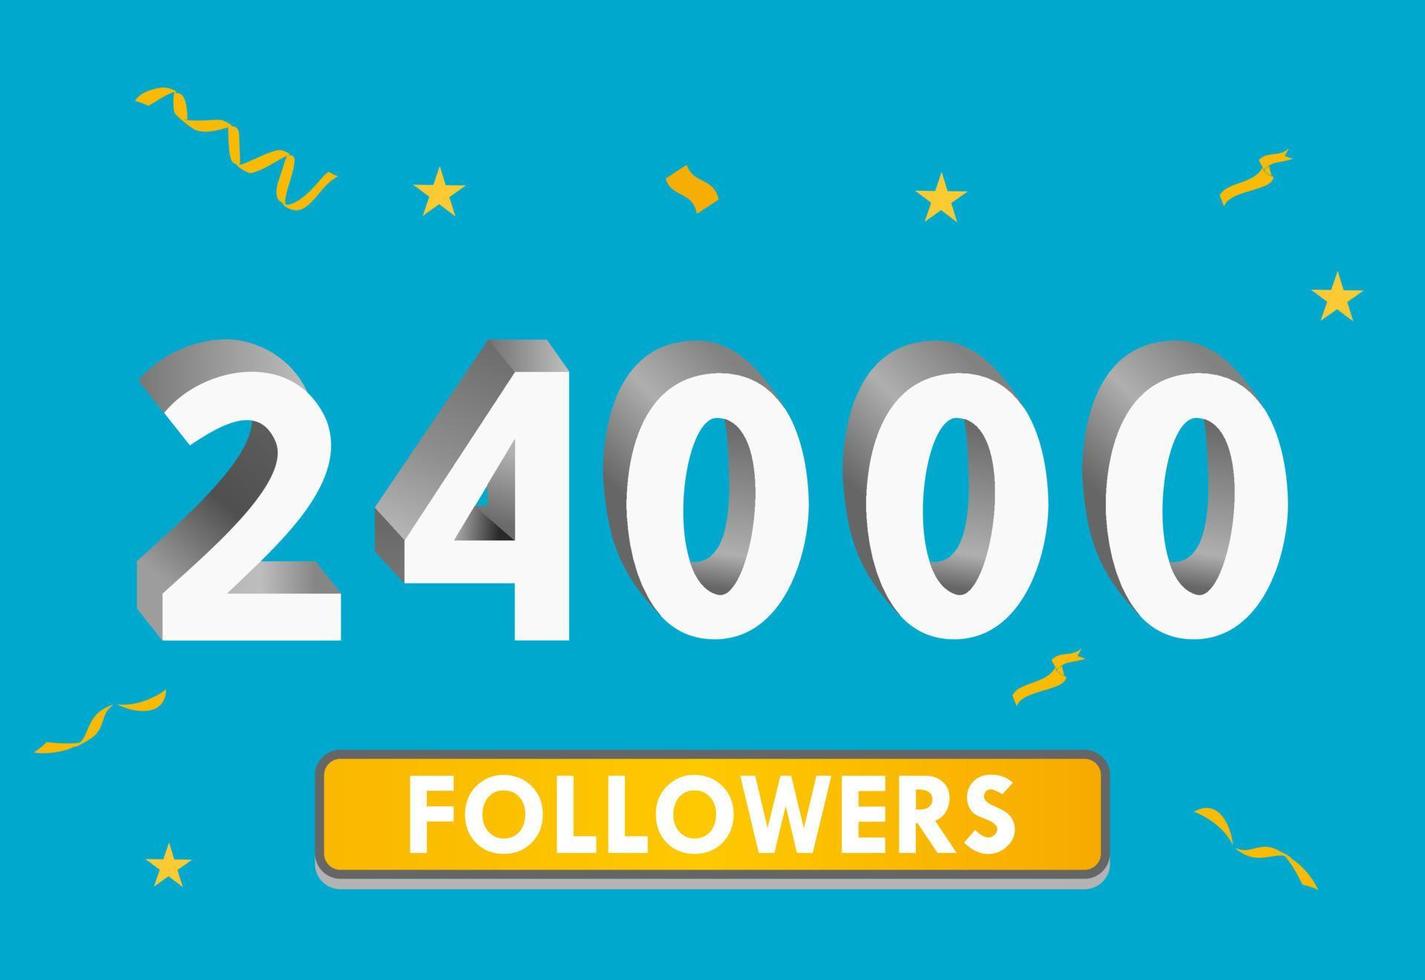 illustration 3d-nummer för sociala medier 24k likes tack, firar prenumeranter fans. banner med 24000 följare vektor